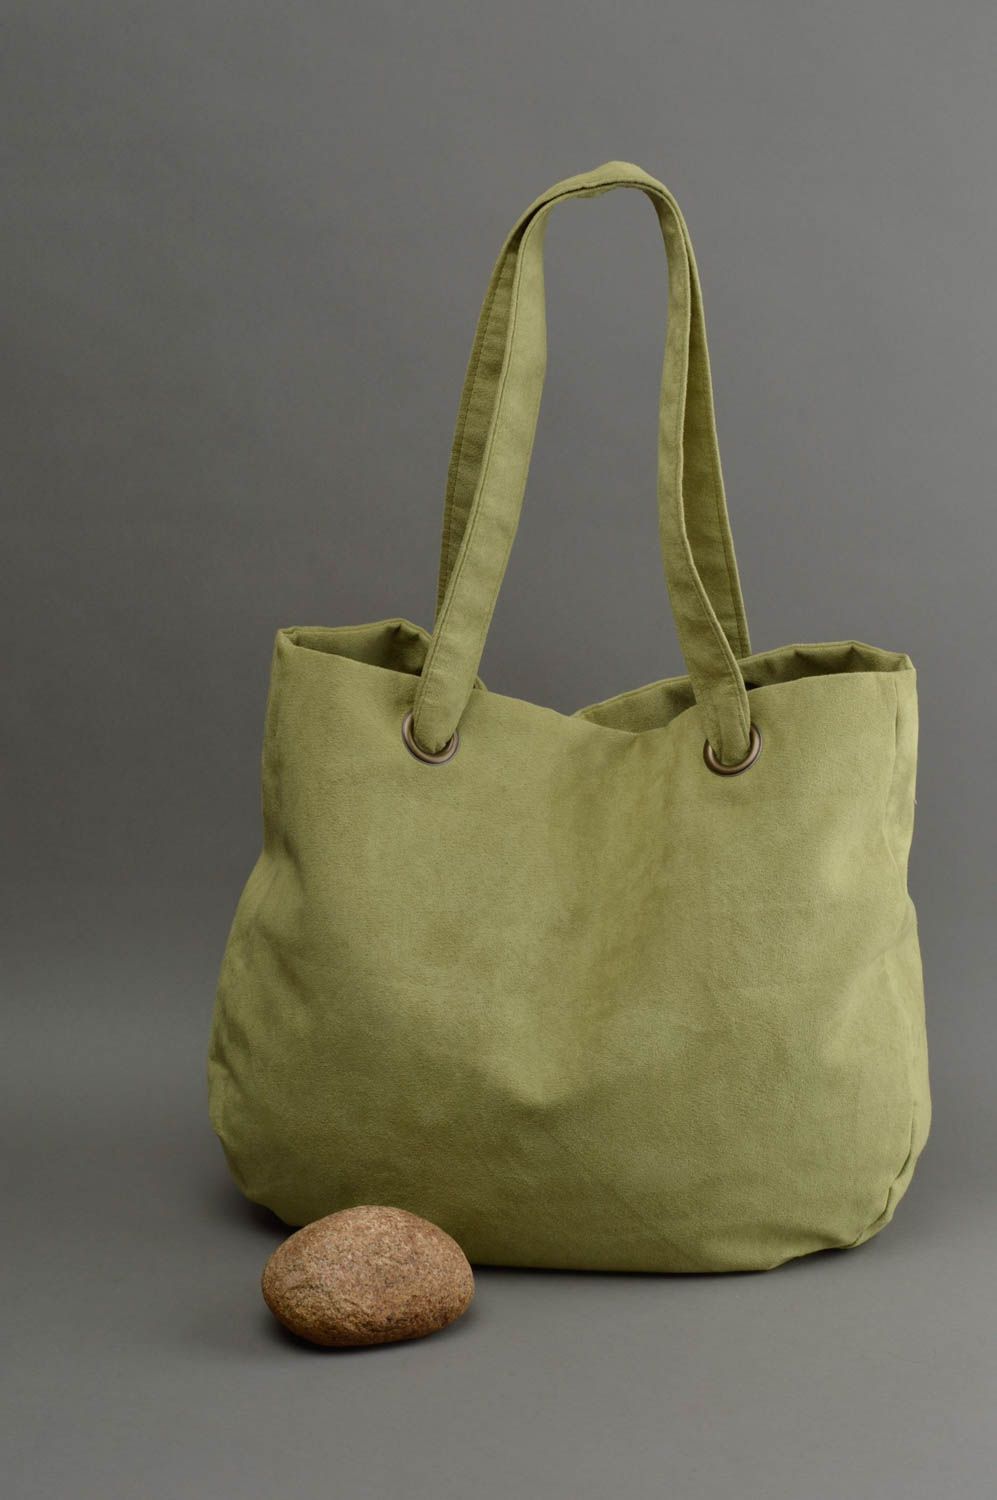 Grand sac à main en daim artificiel fait main vert clair avec poche intérieure photo 1